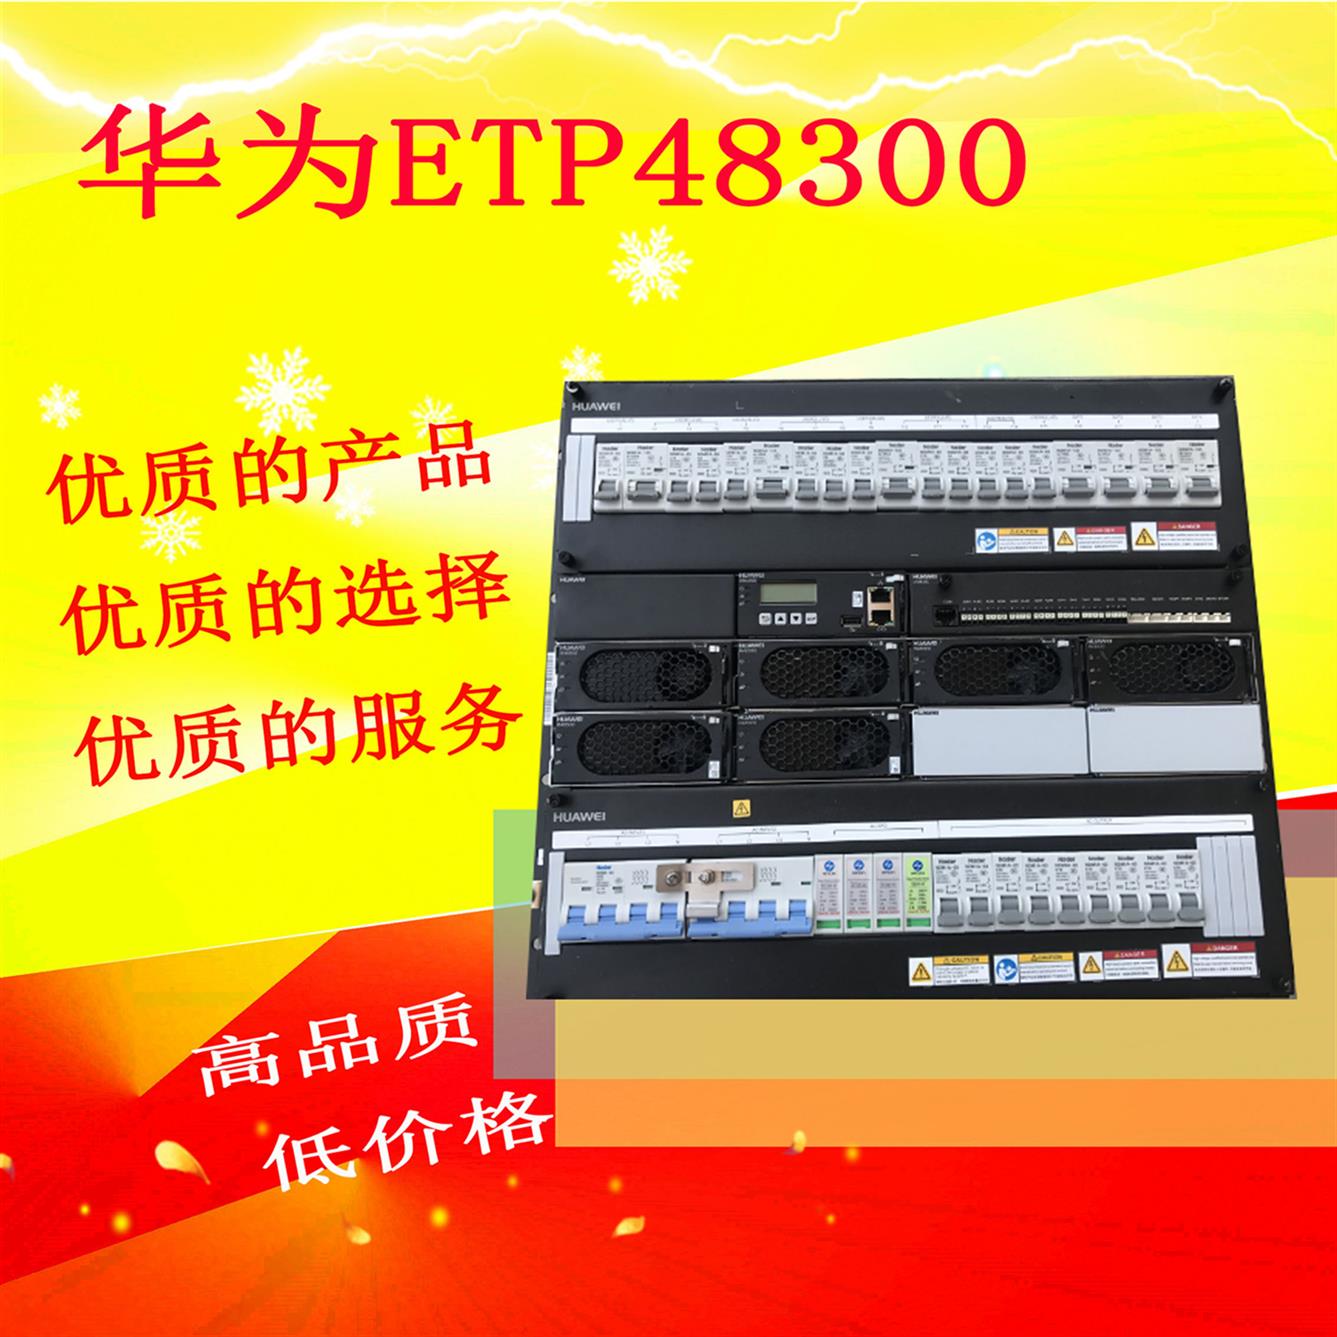 华为ETP48300A嵌入式通信电源厂 华为嵌入式电源